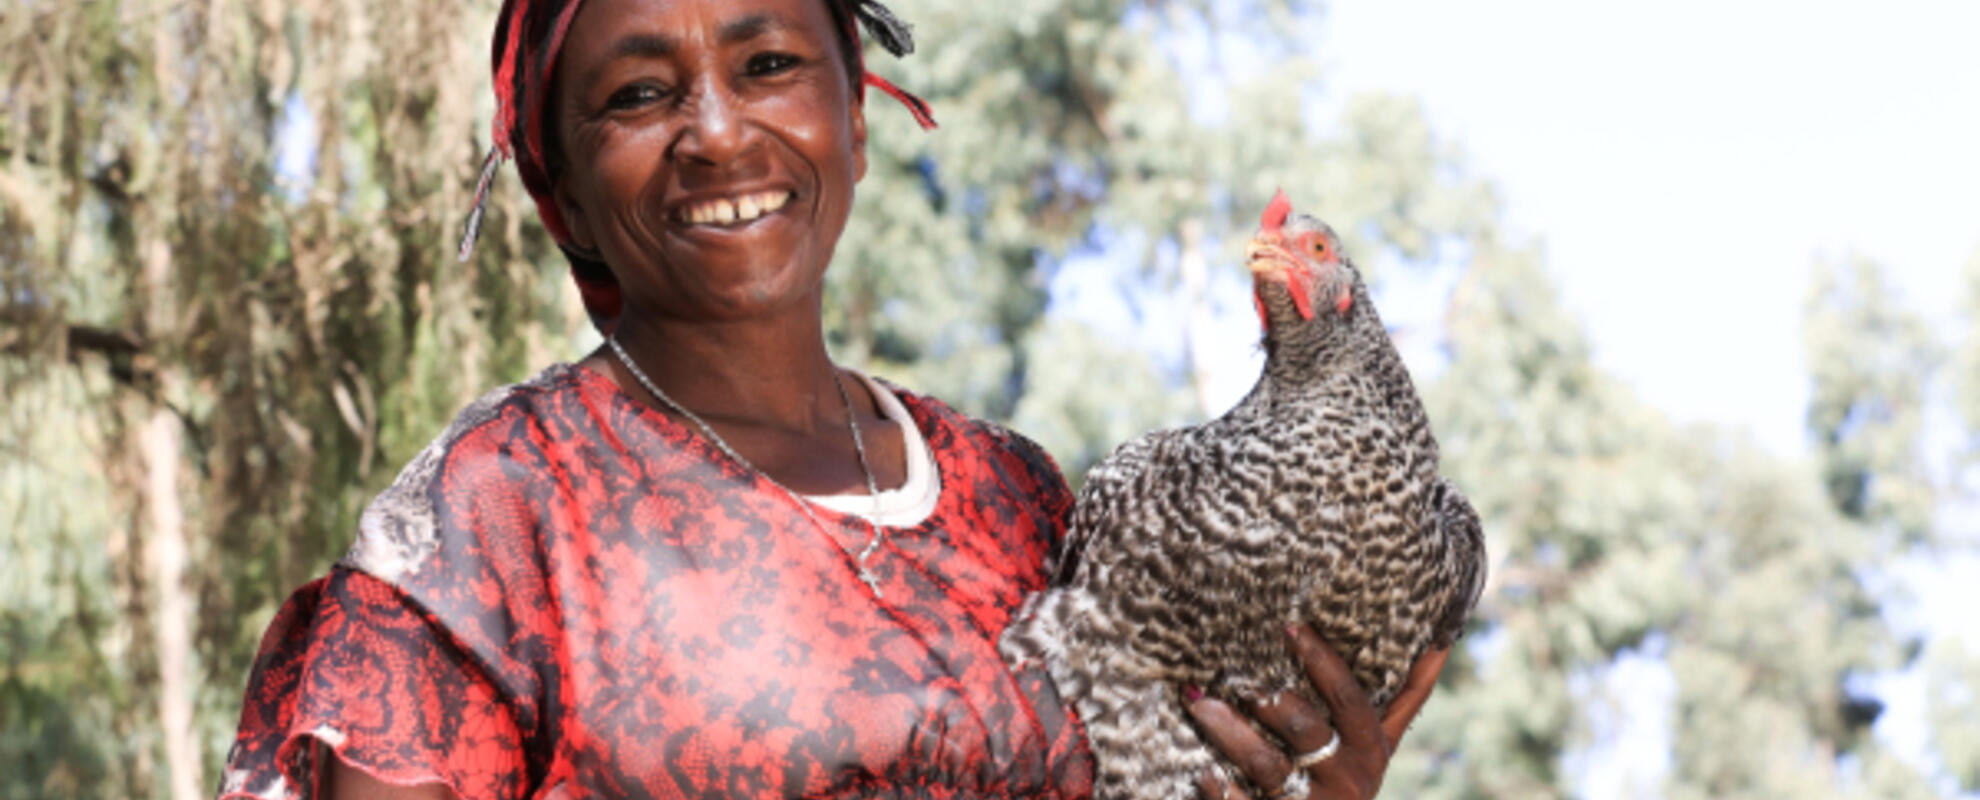 Women's Empowerment in Livestock Index (WELI)